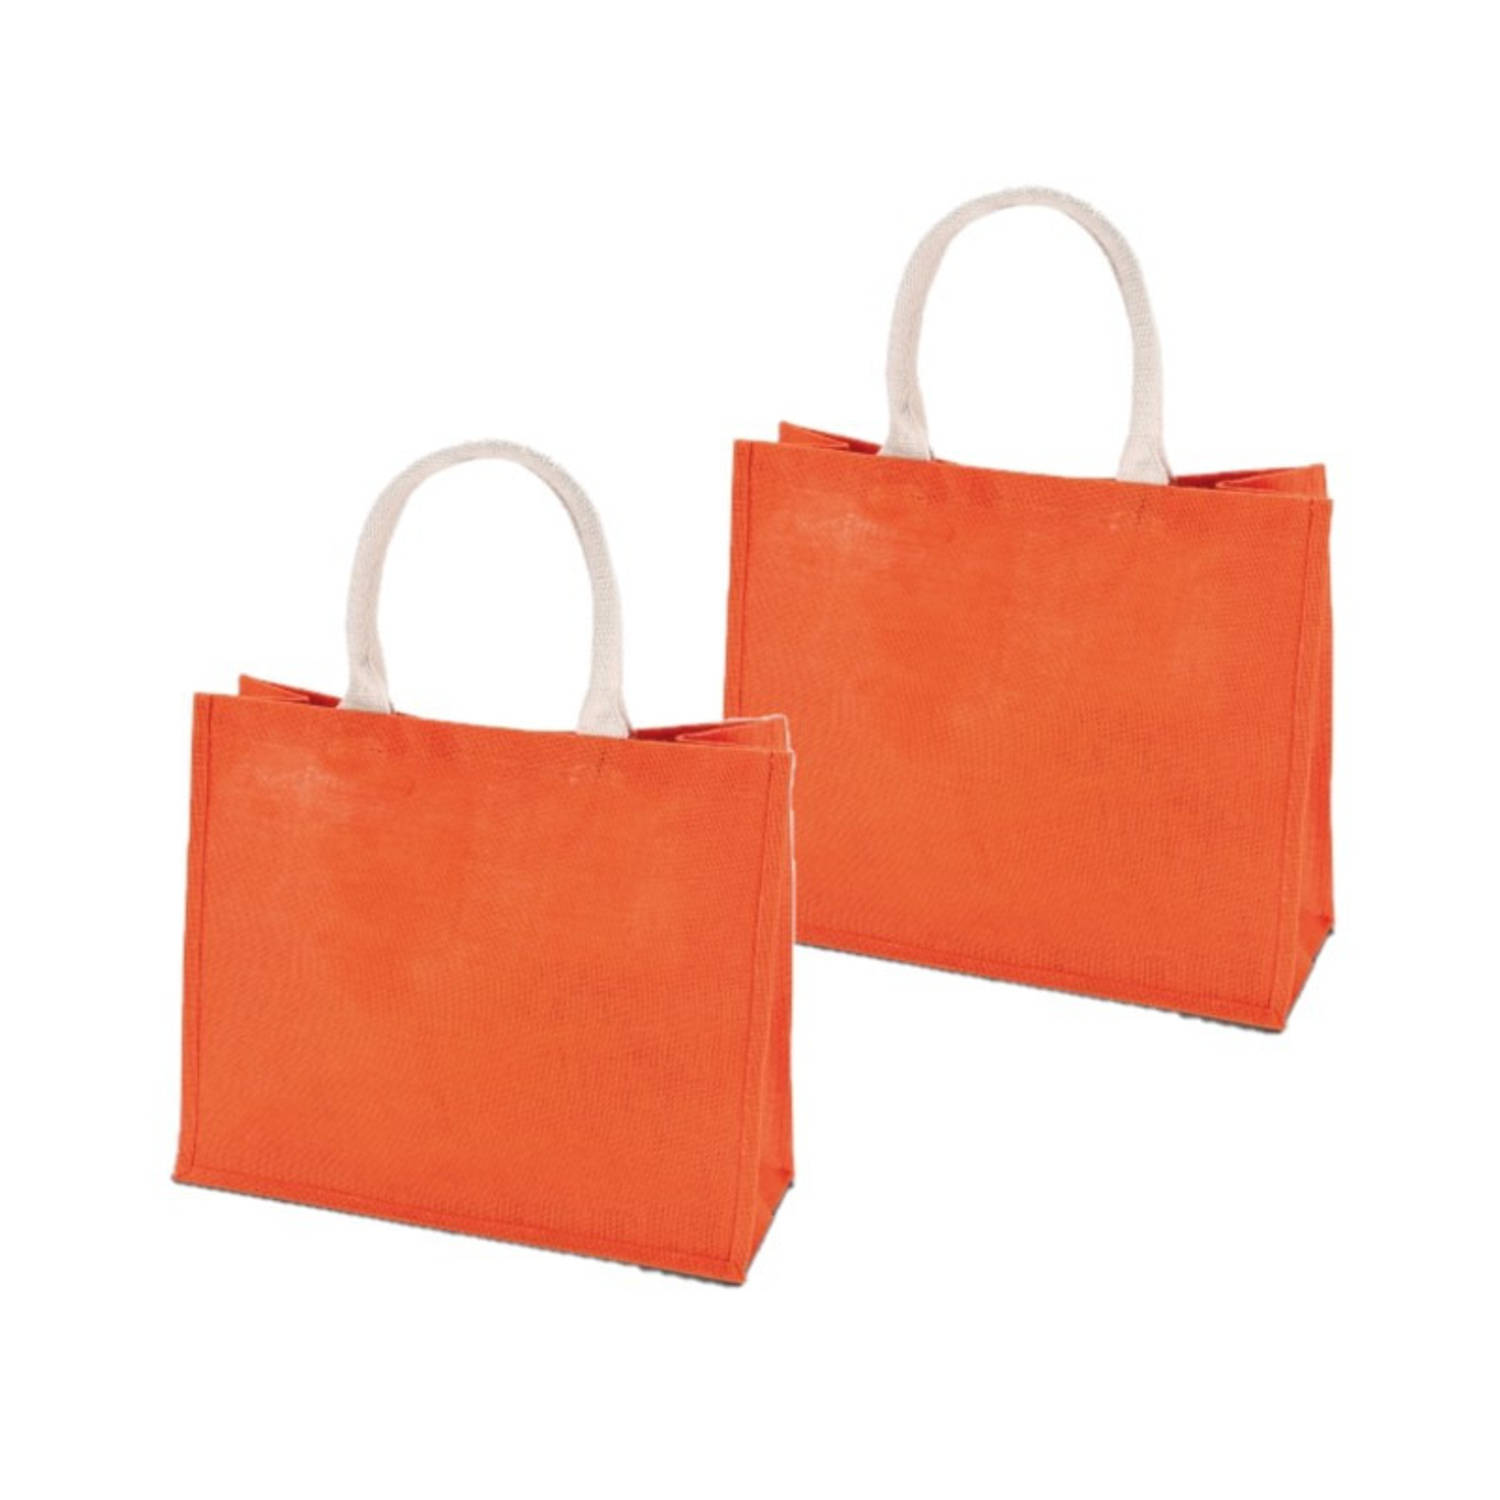 2x stuks oranje jute boodschappentassen 42 cm - Strandtassen